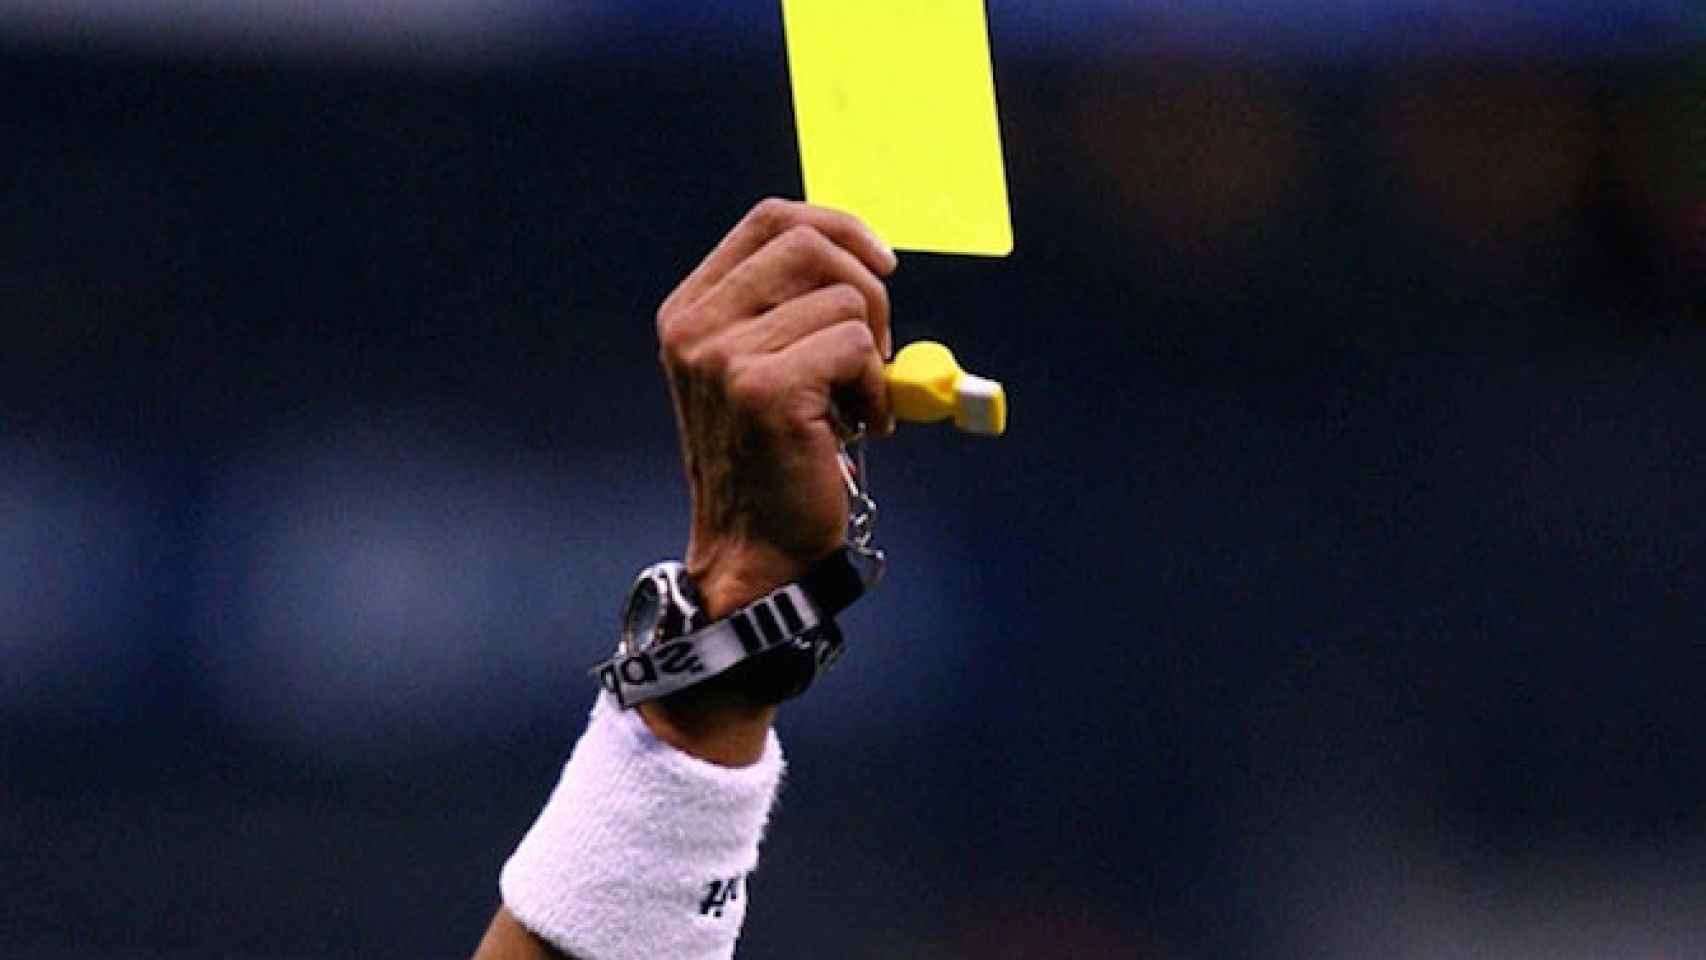 Un árbitro muestra una cartulina amarilla / CD